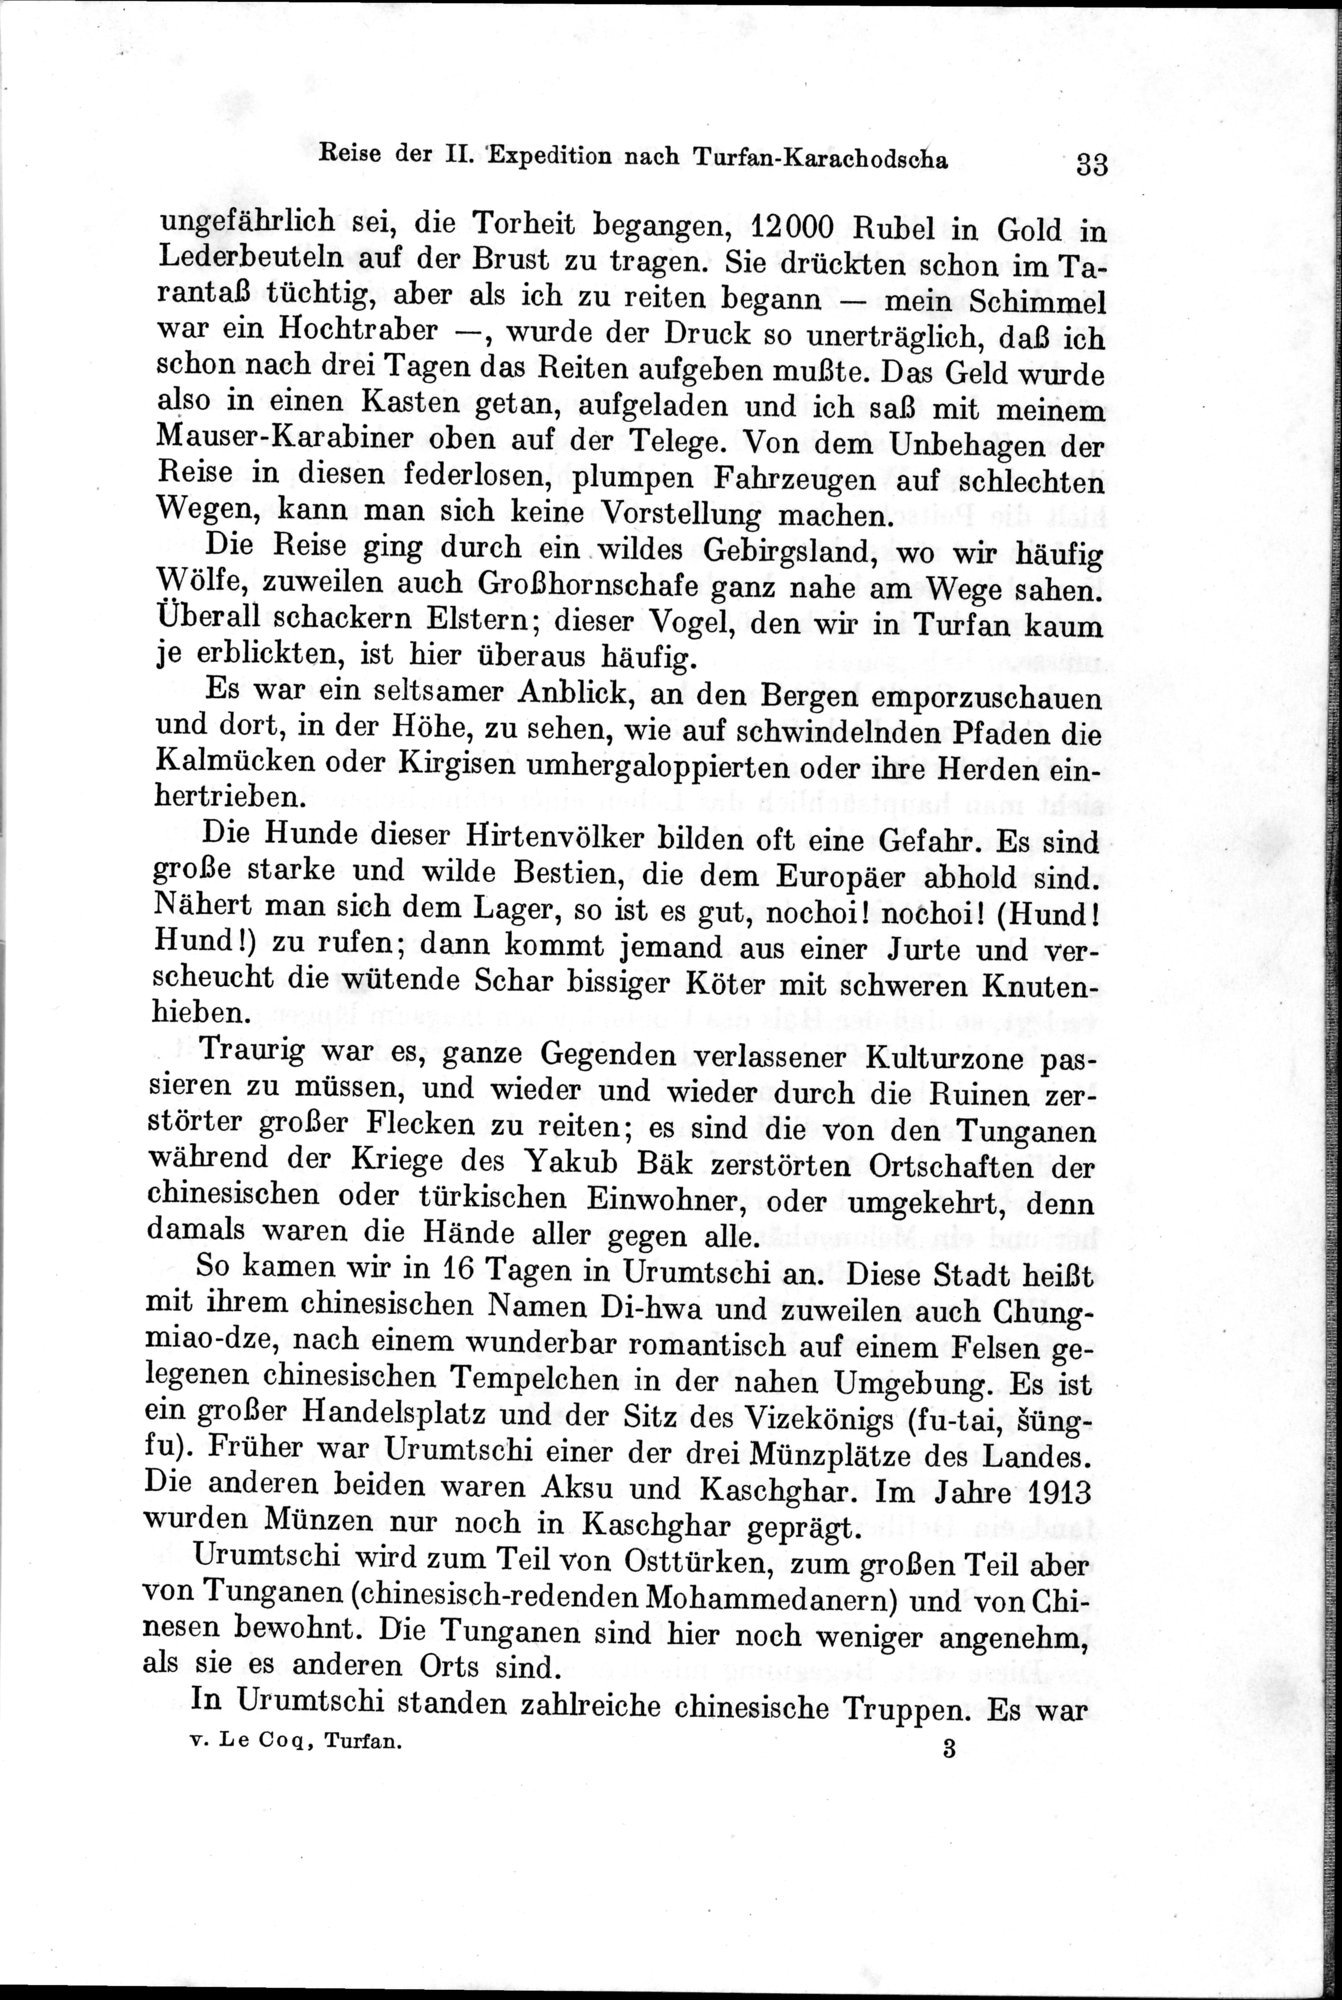 Auf Hellas Spuren in Ostturkistan : vol.1 / Page 55 (Grayscale High Resolution Image)